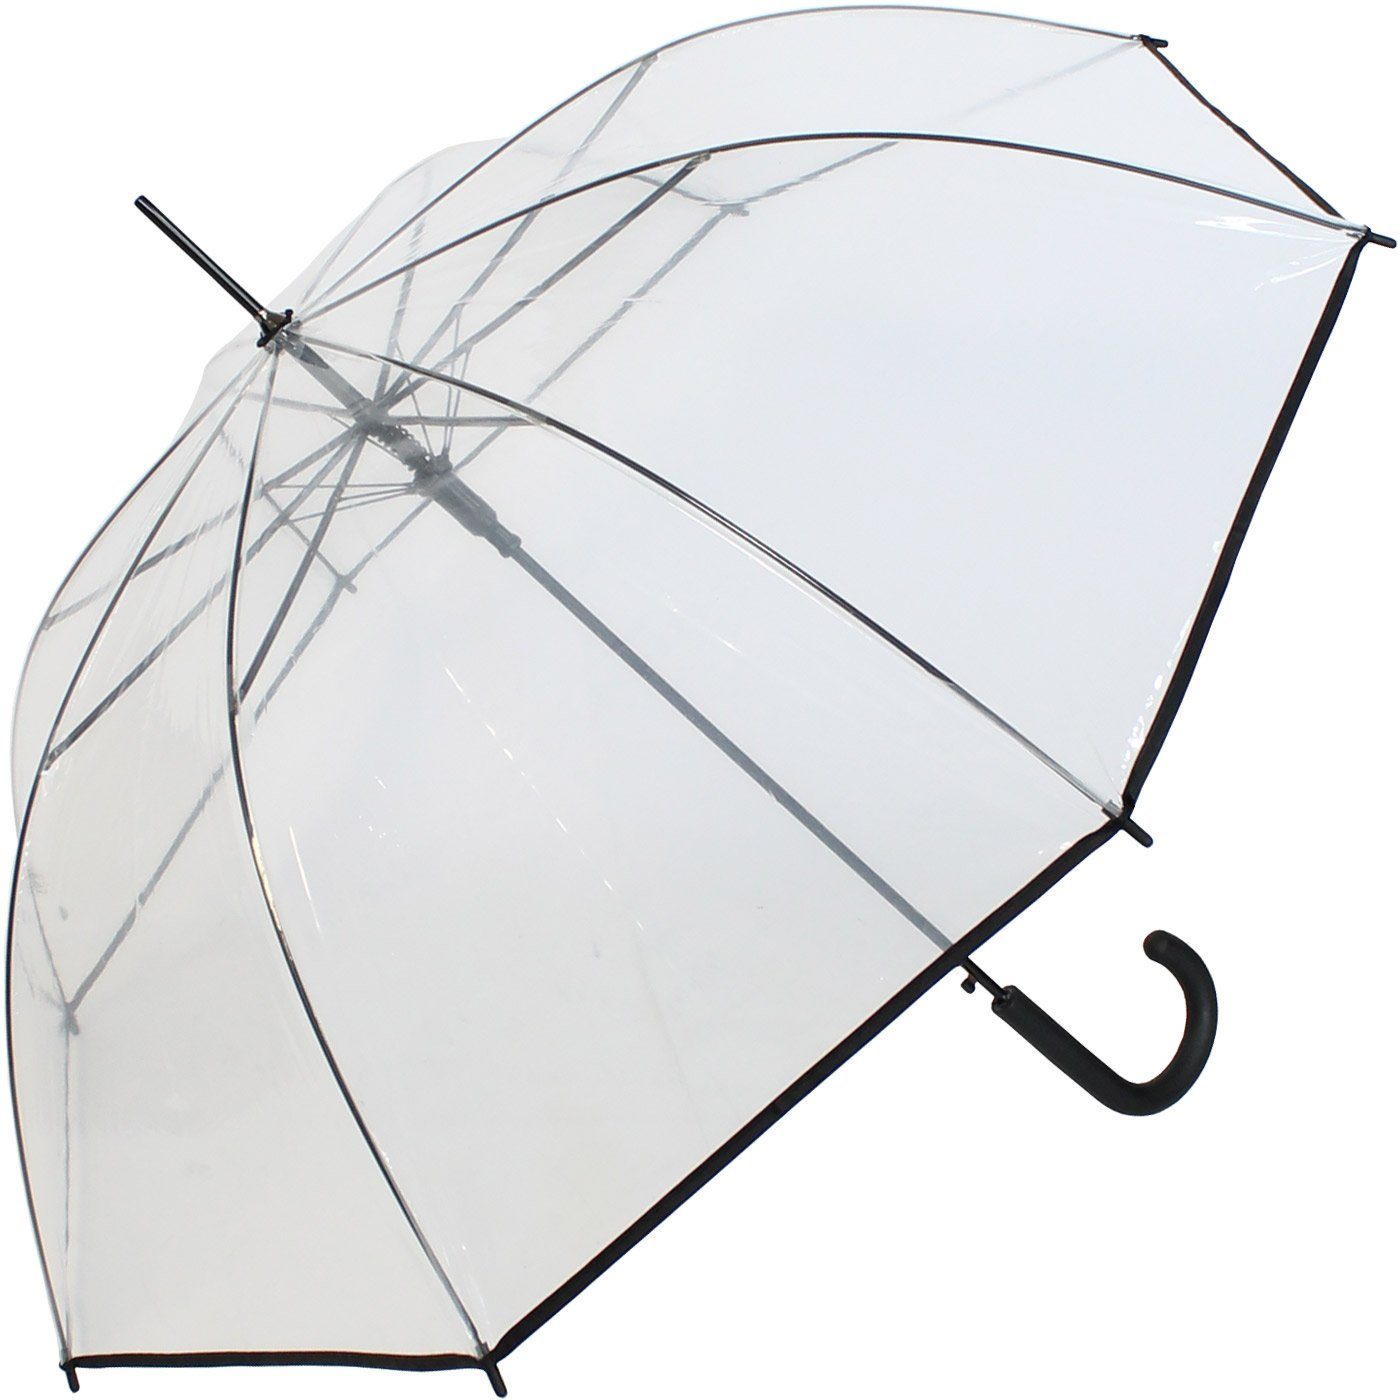 Einfassband, Transparentschirm Langregenschirm HAPPY durchsichtig RAIN mit durchsichtig